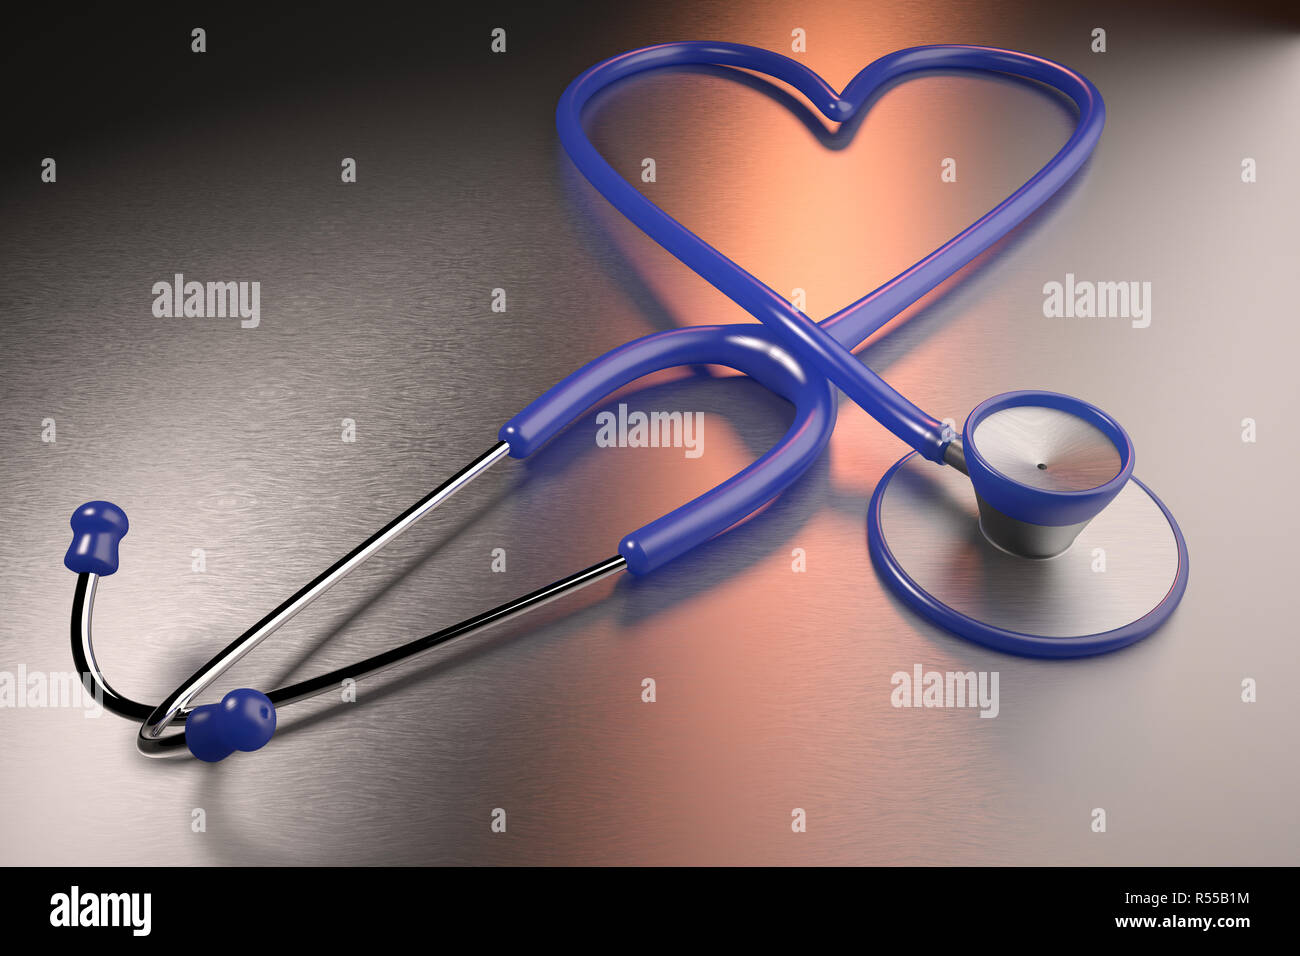 Le rendu 3D d'un concept de santé cardiaque représentée avec un stéthoscope en forme de coeur Banque D'Images